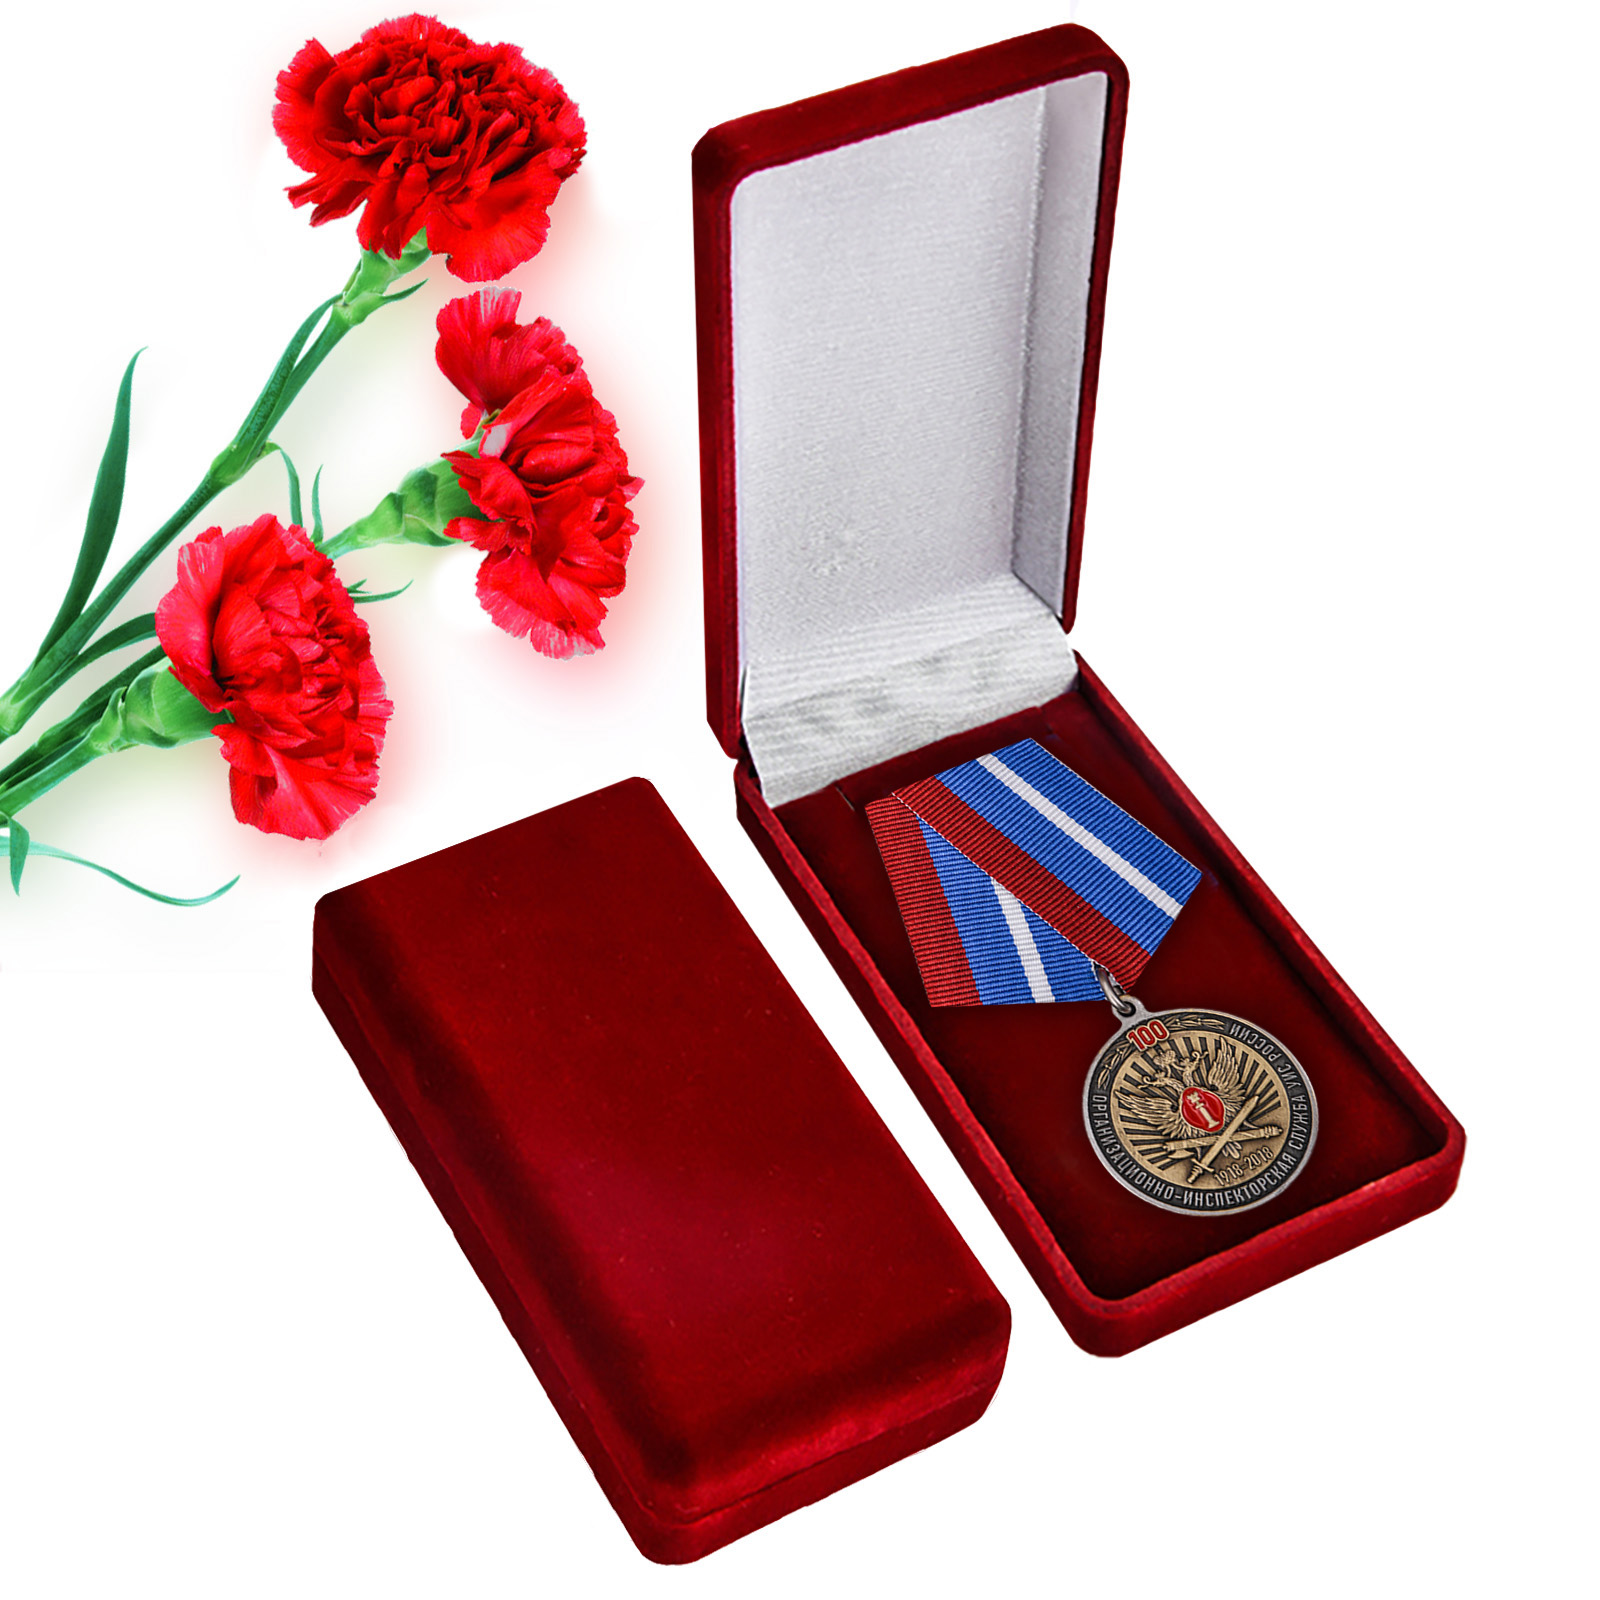 Купить юбилейную медаль 100 лет Организационно-инспекторской службы УИС России с доставкой